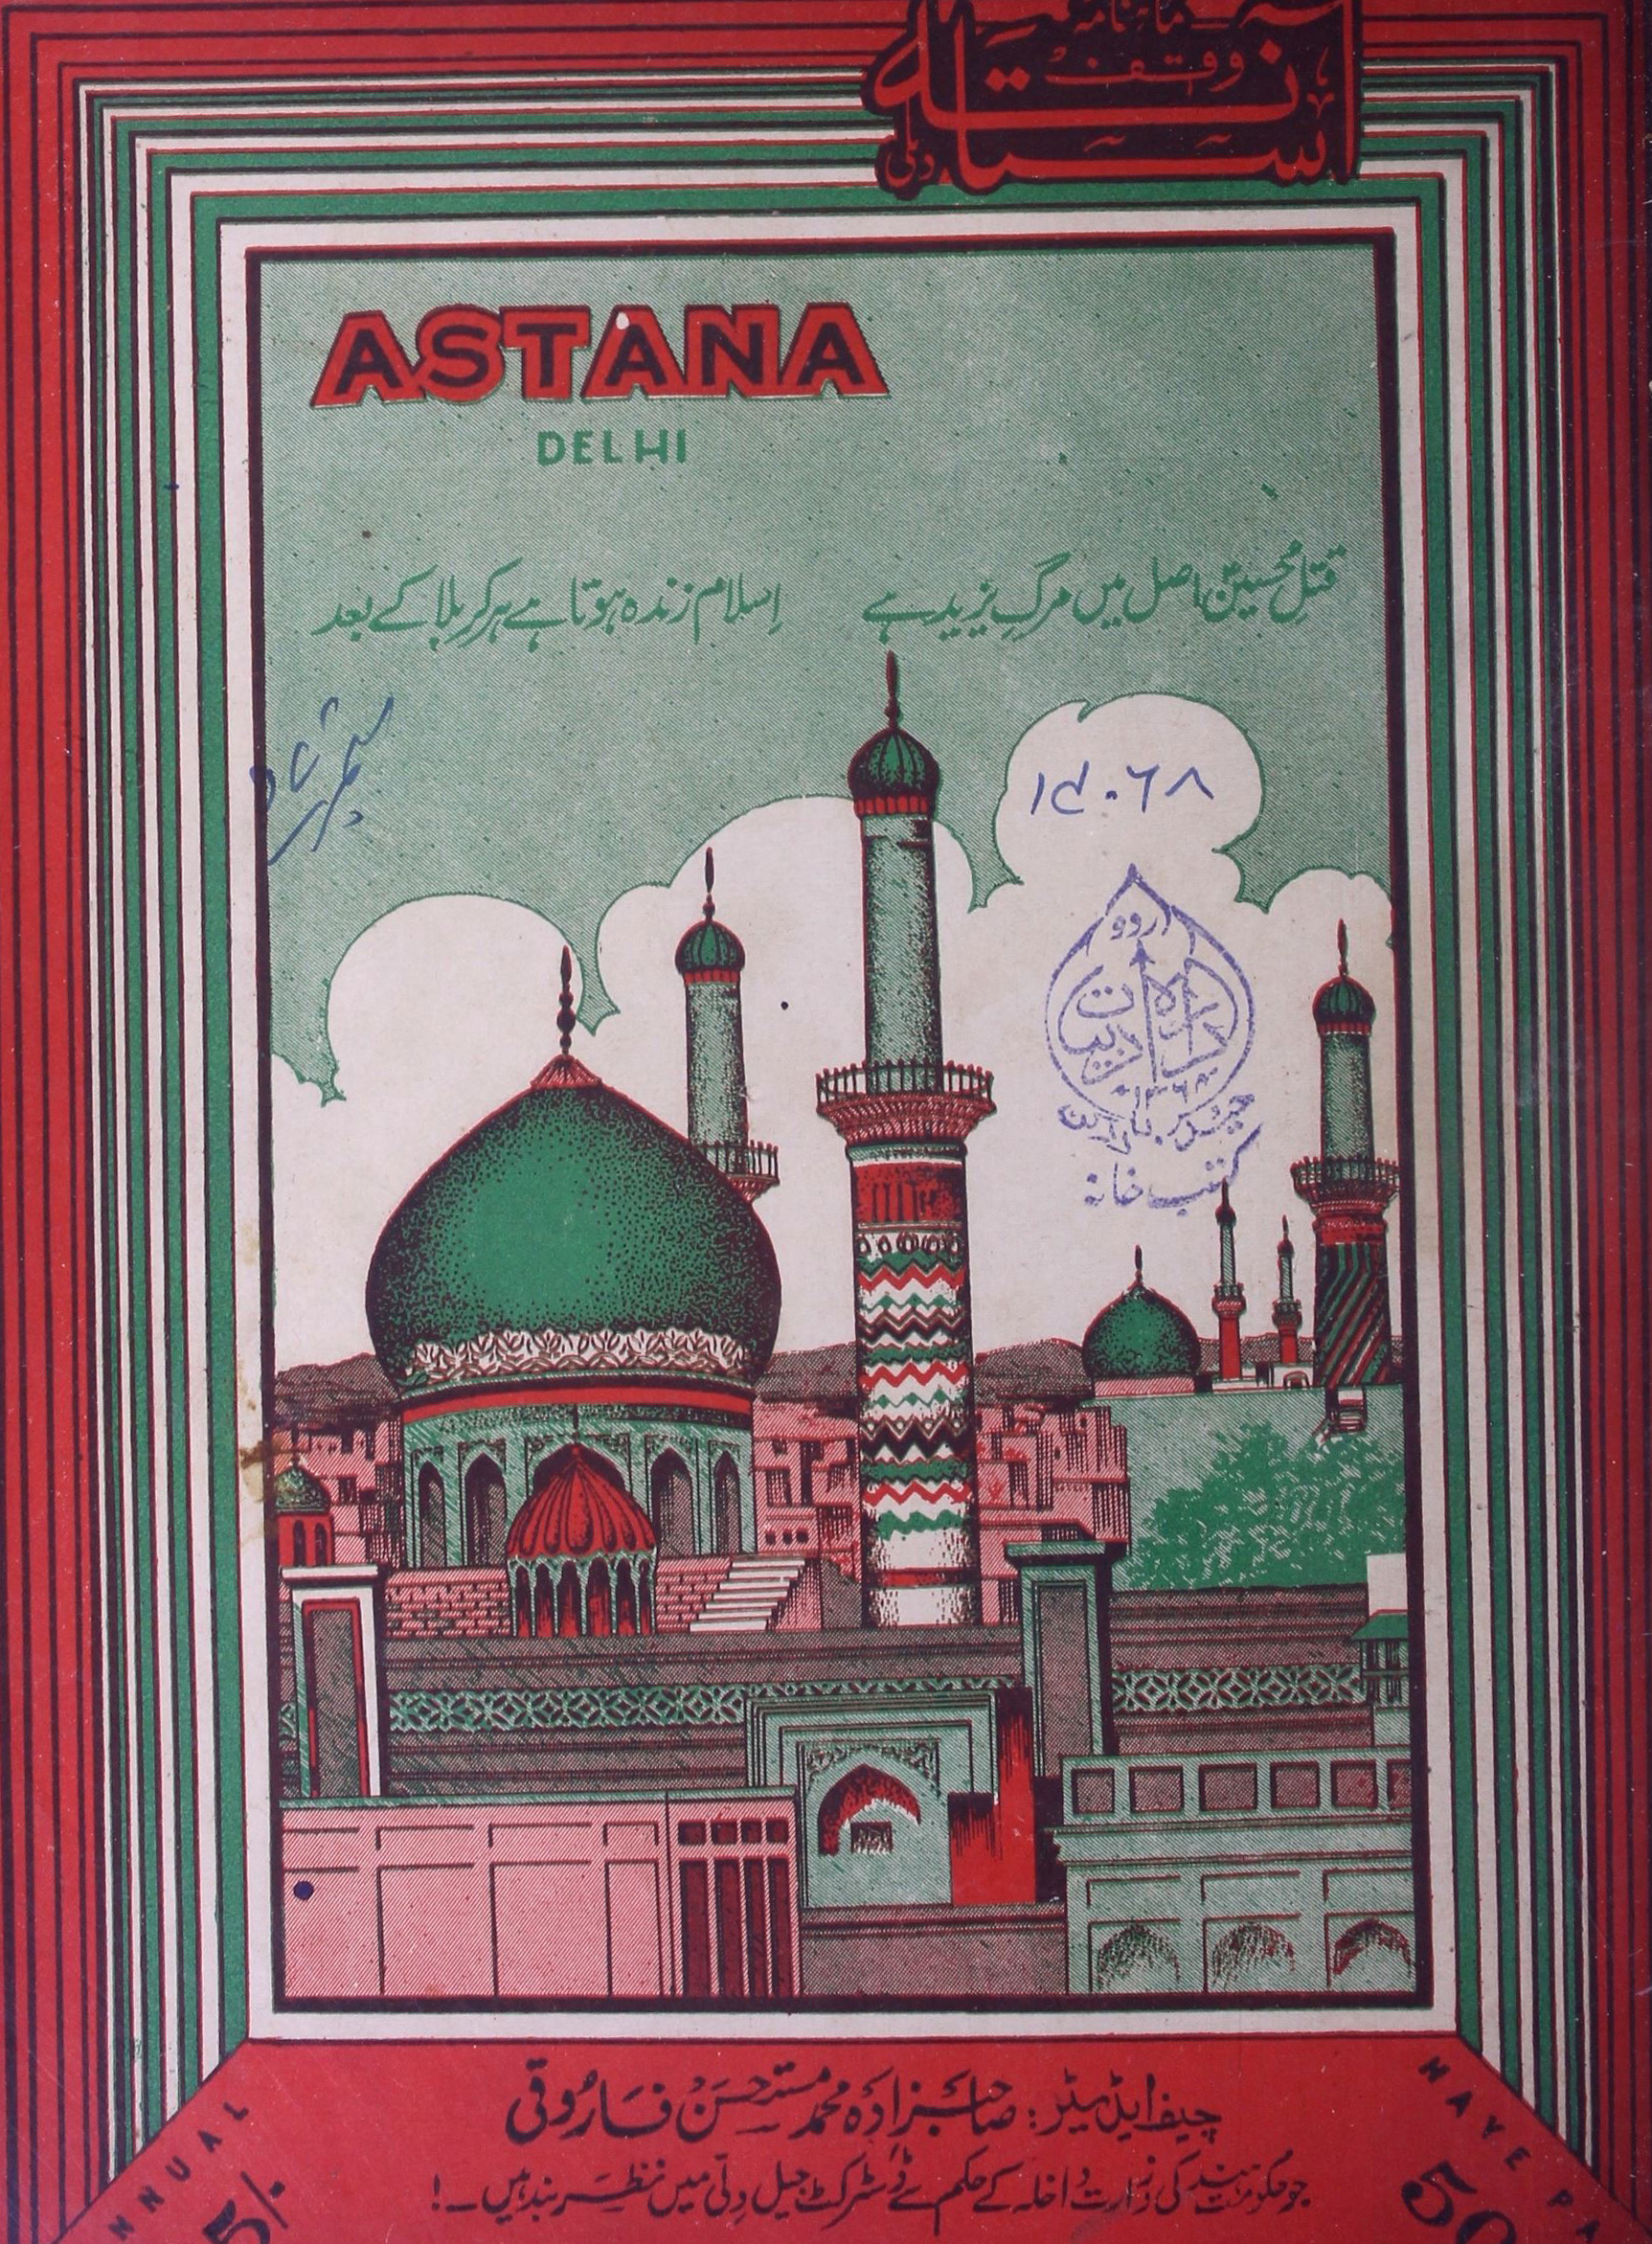 Astana September 1957